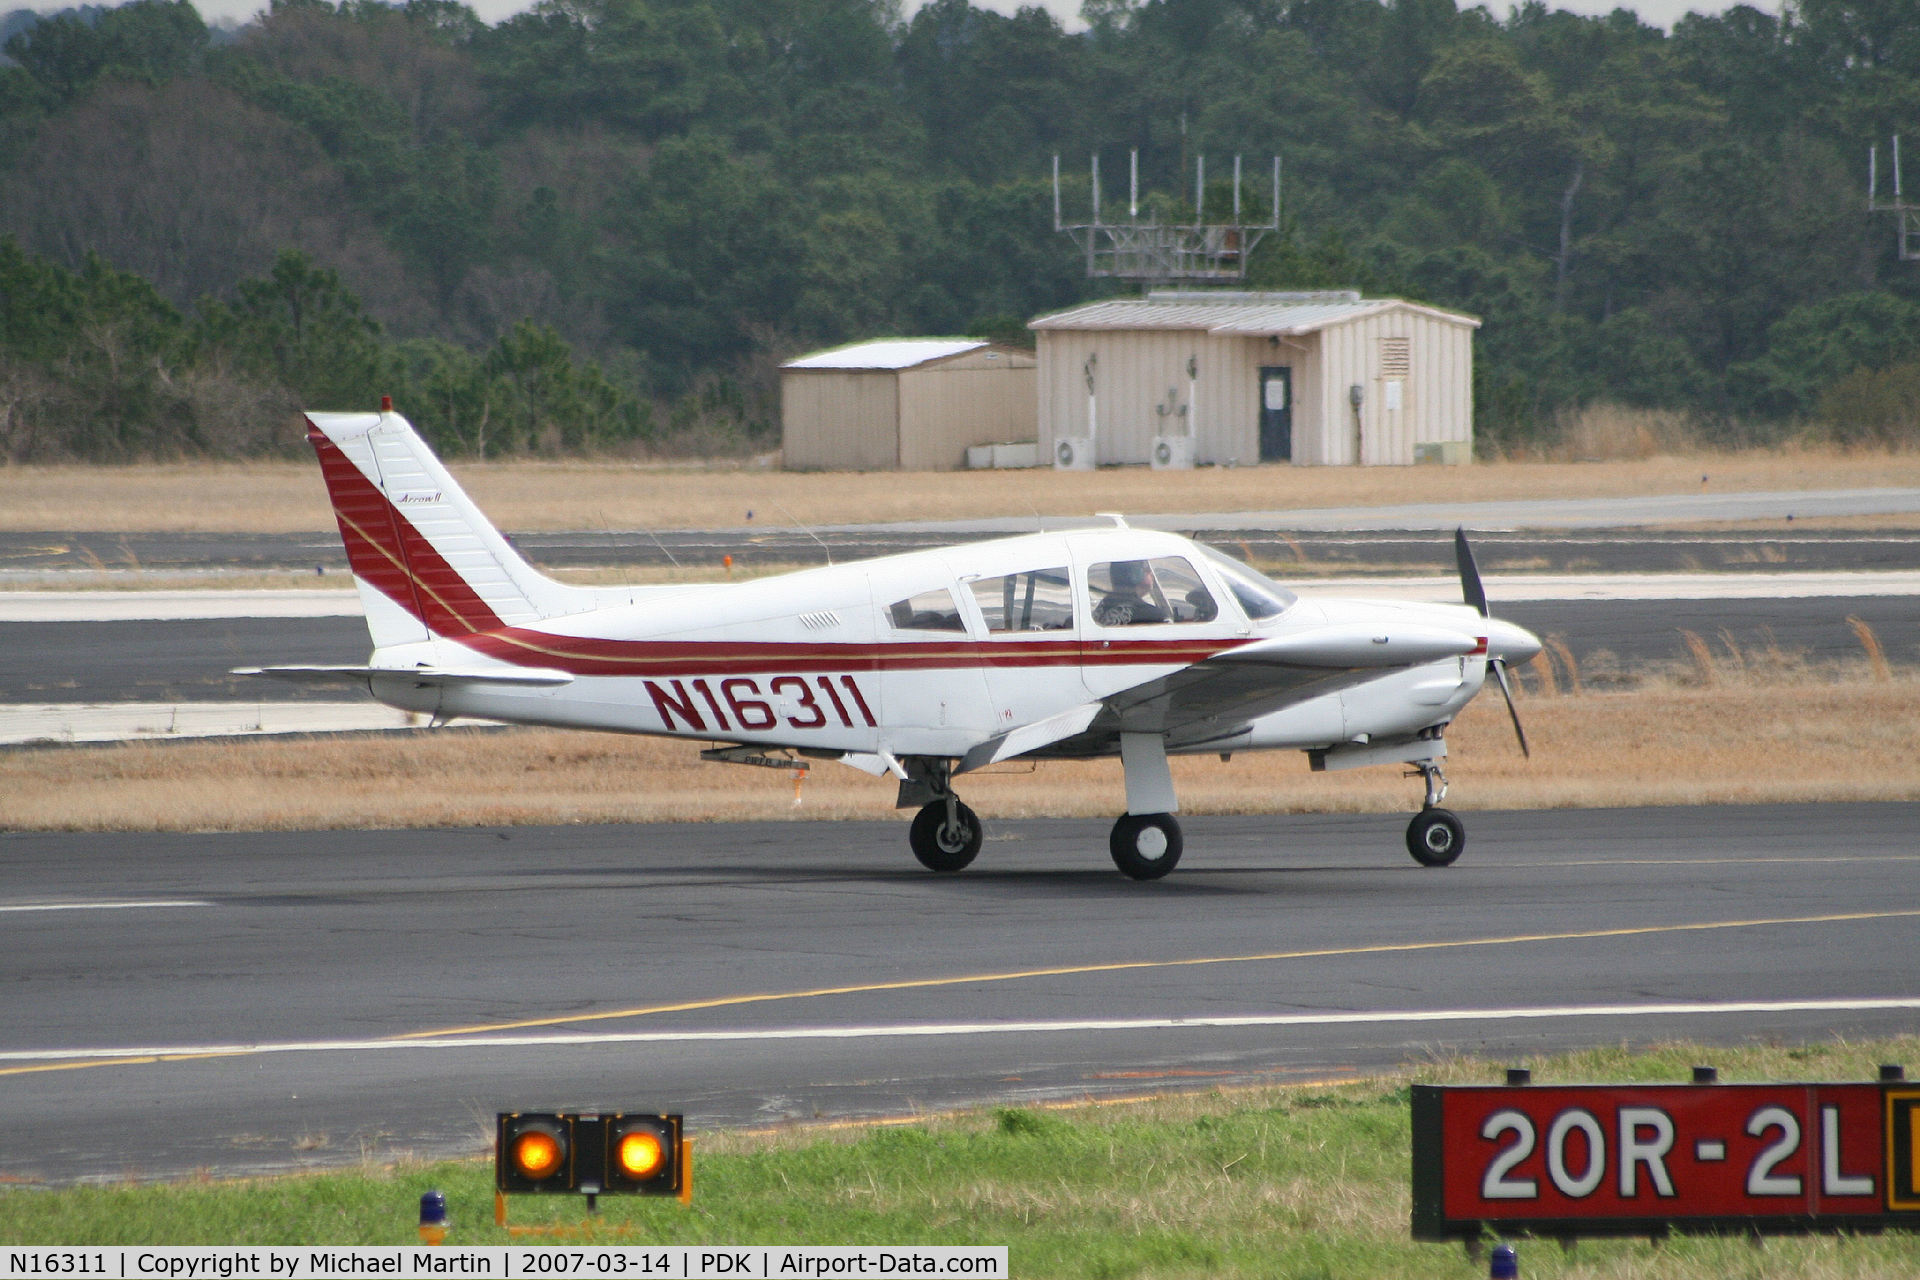 N16311, 1973 Piper PA-28R-200 C/N 28R-7335124, Landing Runway 20R